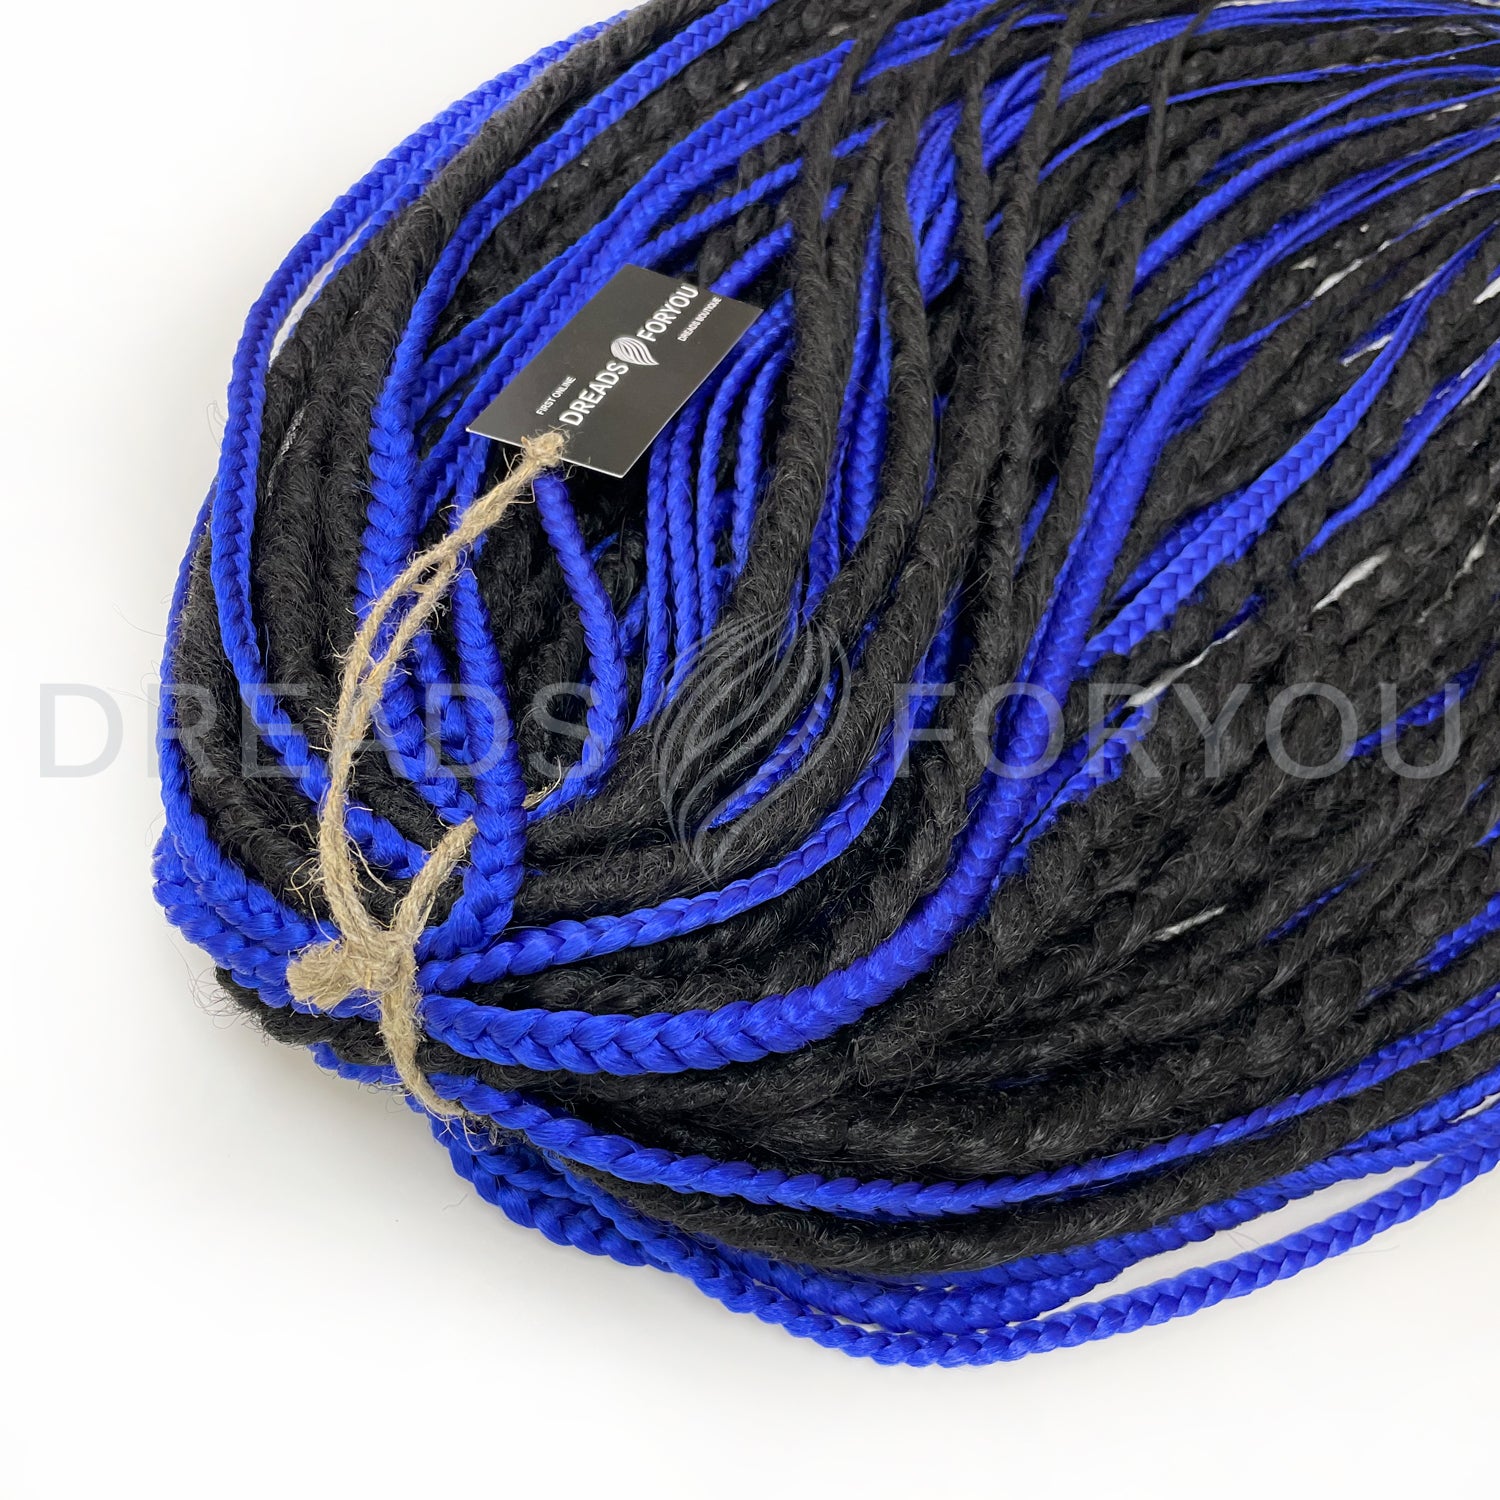 Crochet + Textured Dreads + Braids 1, F22